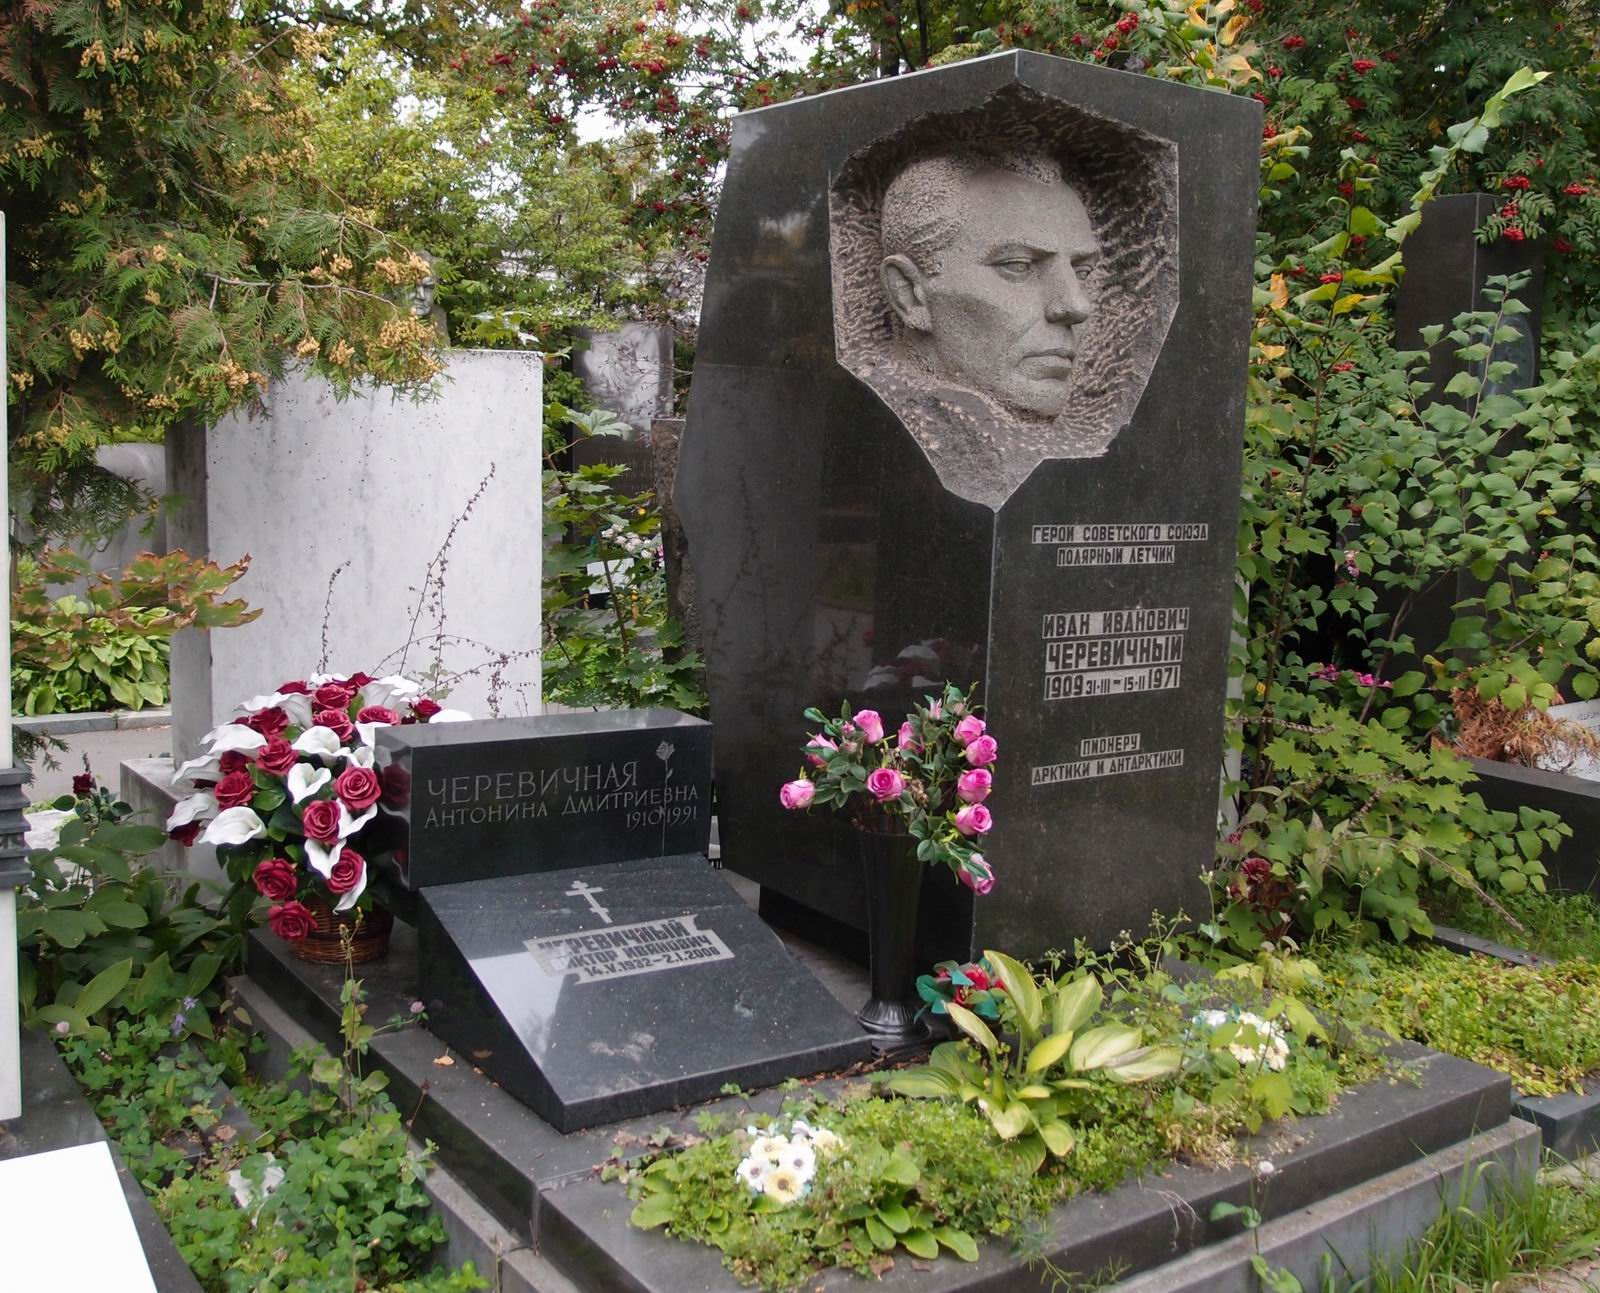 Памятник на могиле Черевичного И.И. (1909-1971), ск. В.Пилипер, на Новодевичьем кладбище (7-15-10). Нажмите левую кнопку мыши чтобы увидеть фрагмент памятника.